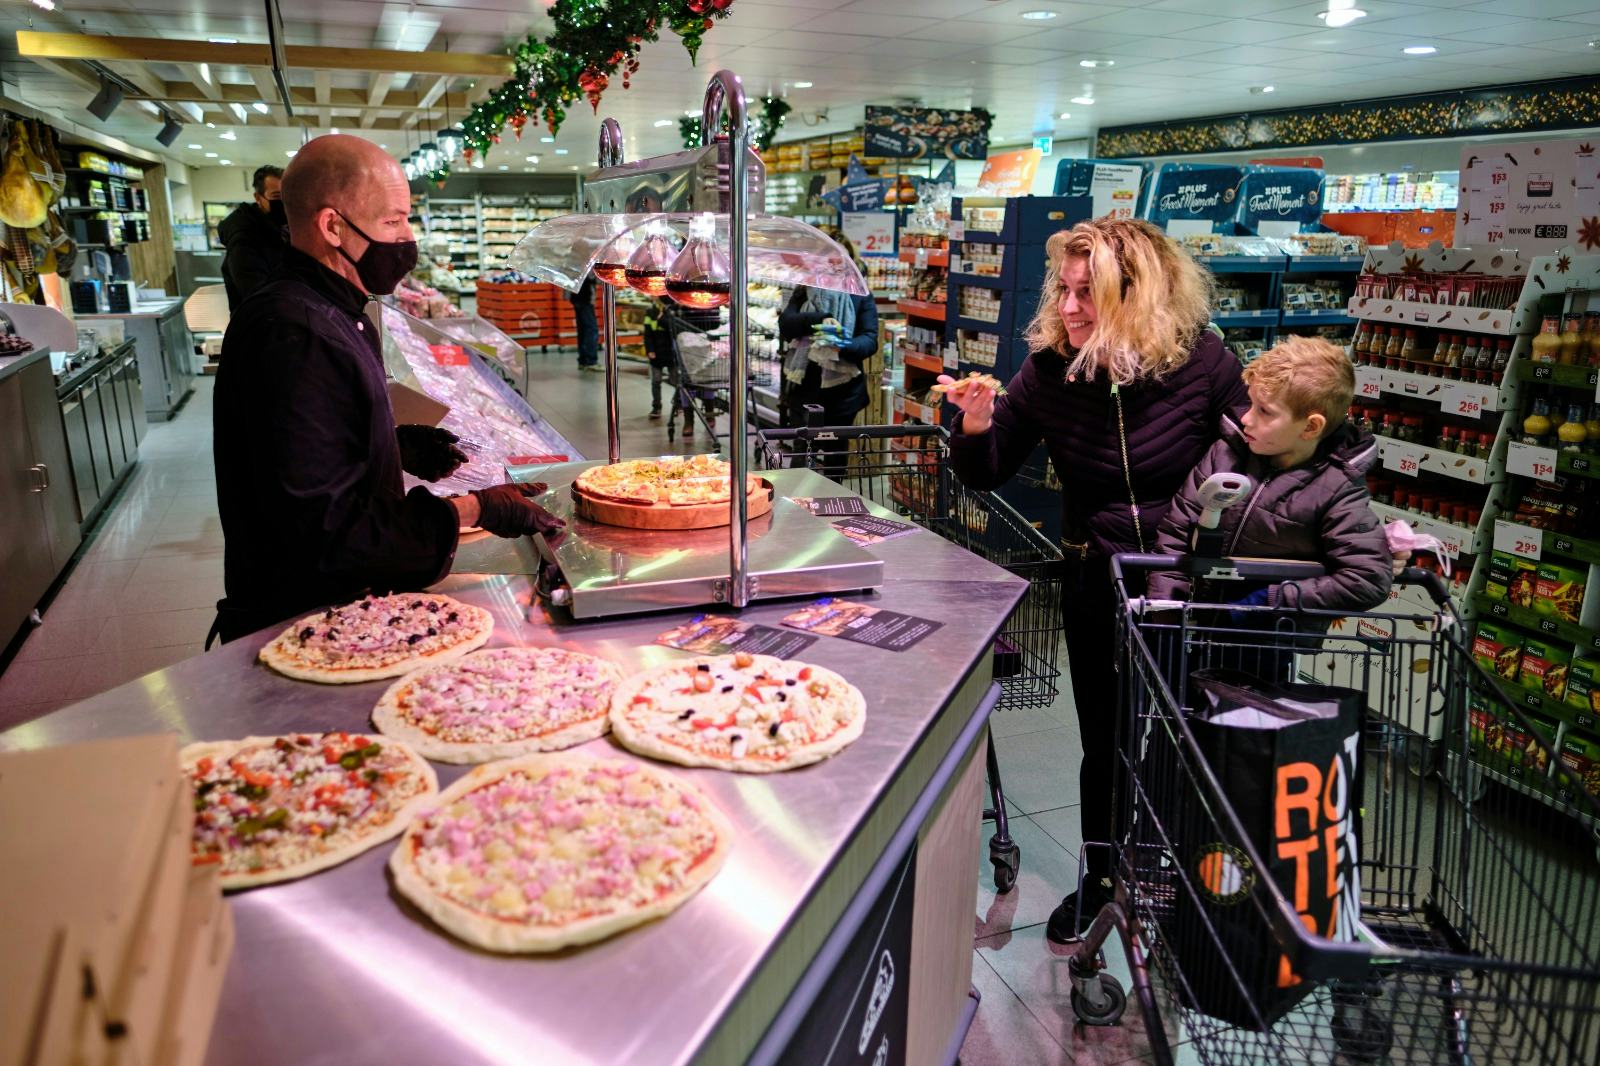 De pizzashop van Bij Marc bevindt zich midden in de winkel van Plus Trommel. Foto: Roel Dijkstra Fotografie